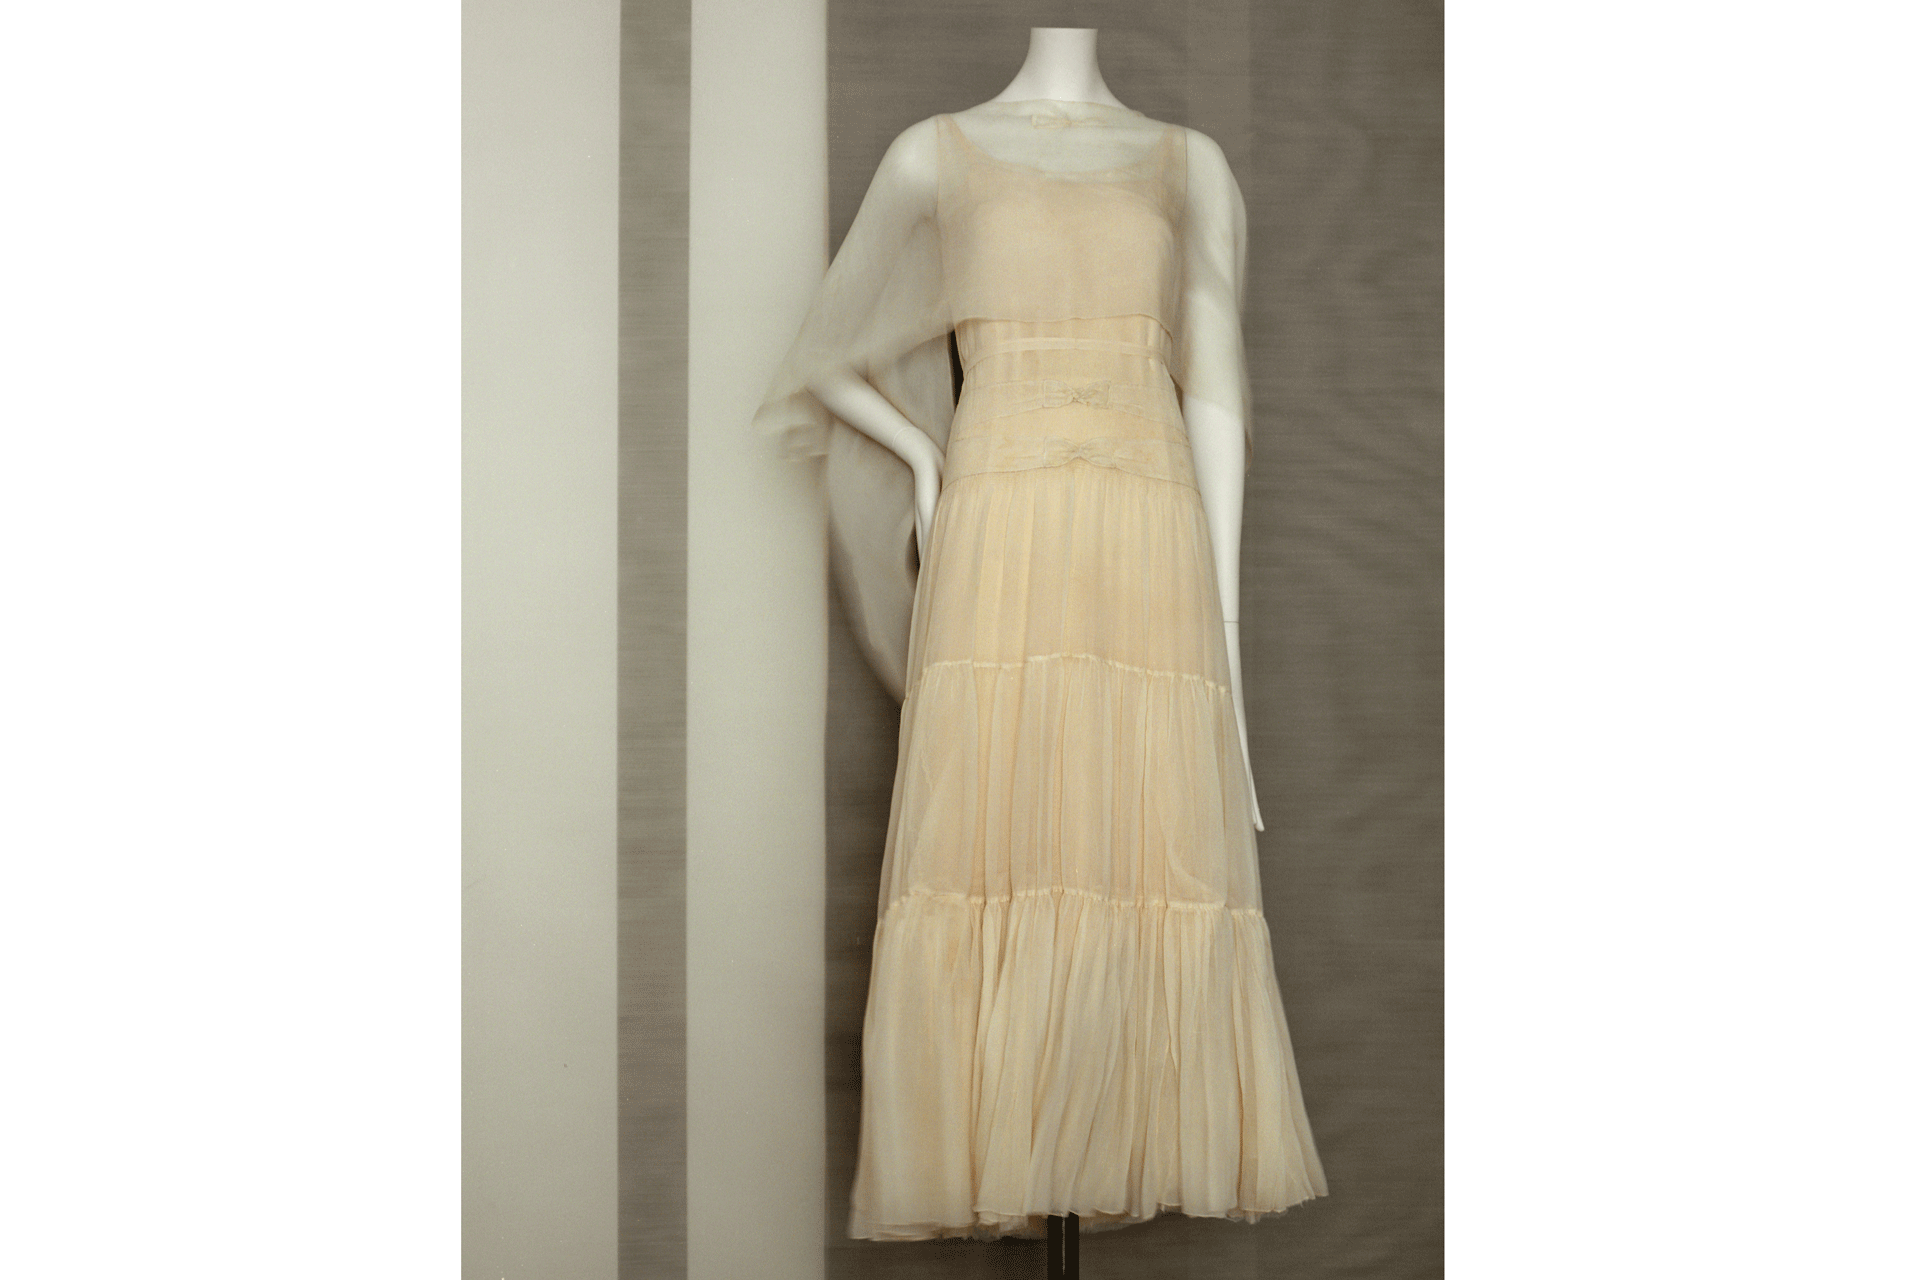 Evening dressSpring-summer 1930Silk satin with insertsParis,Patrimoinede Chanel© Julien T. Hamon